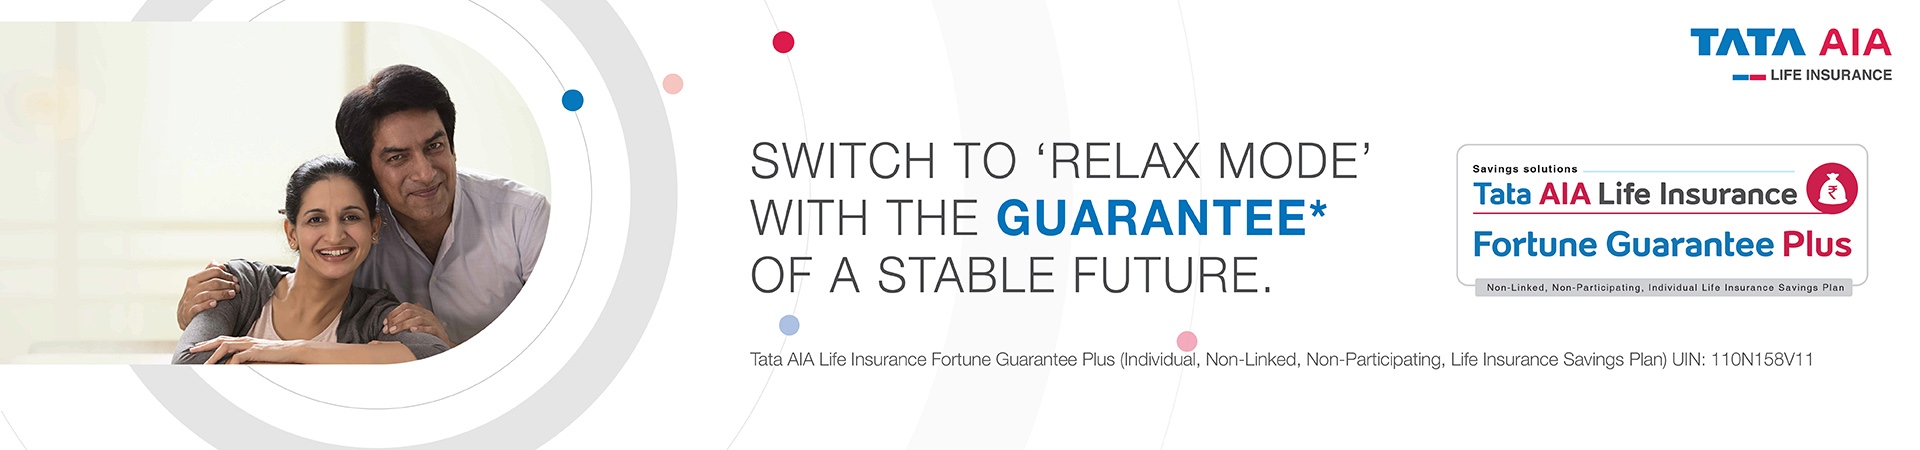 Tata AIA Life Insurance Fortune Guarantee Pension